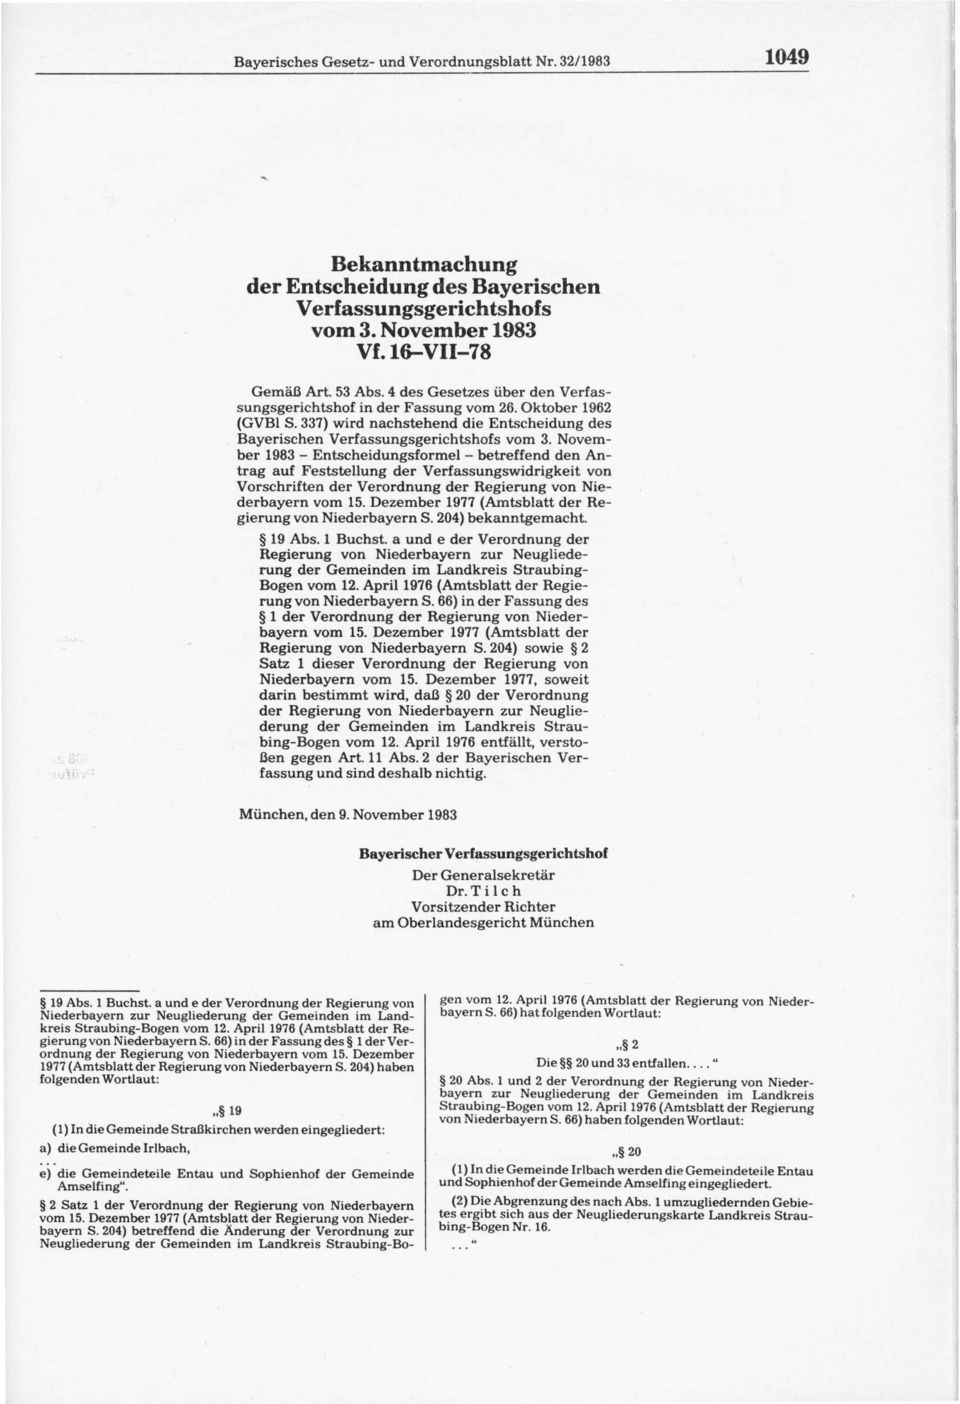 November 1983 - Entscheidungsformel - betreffend den Antrag auf Feststellung der Verfassungswidrigkeit von Vorschriften der Verordnung der Regierung von Niederbayern vom 15.